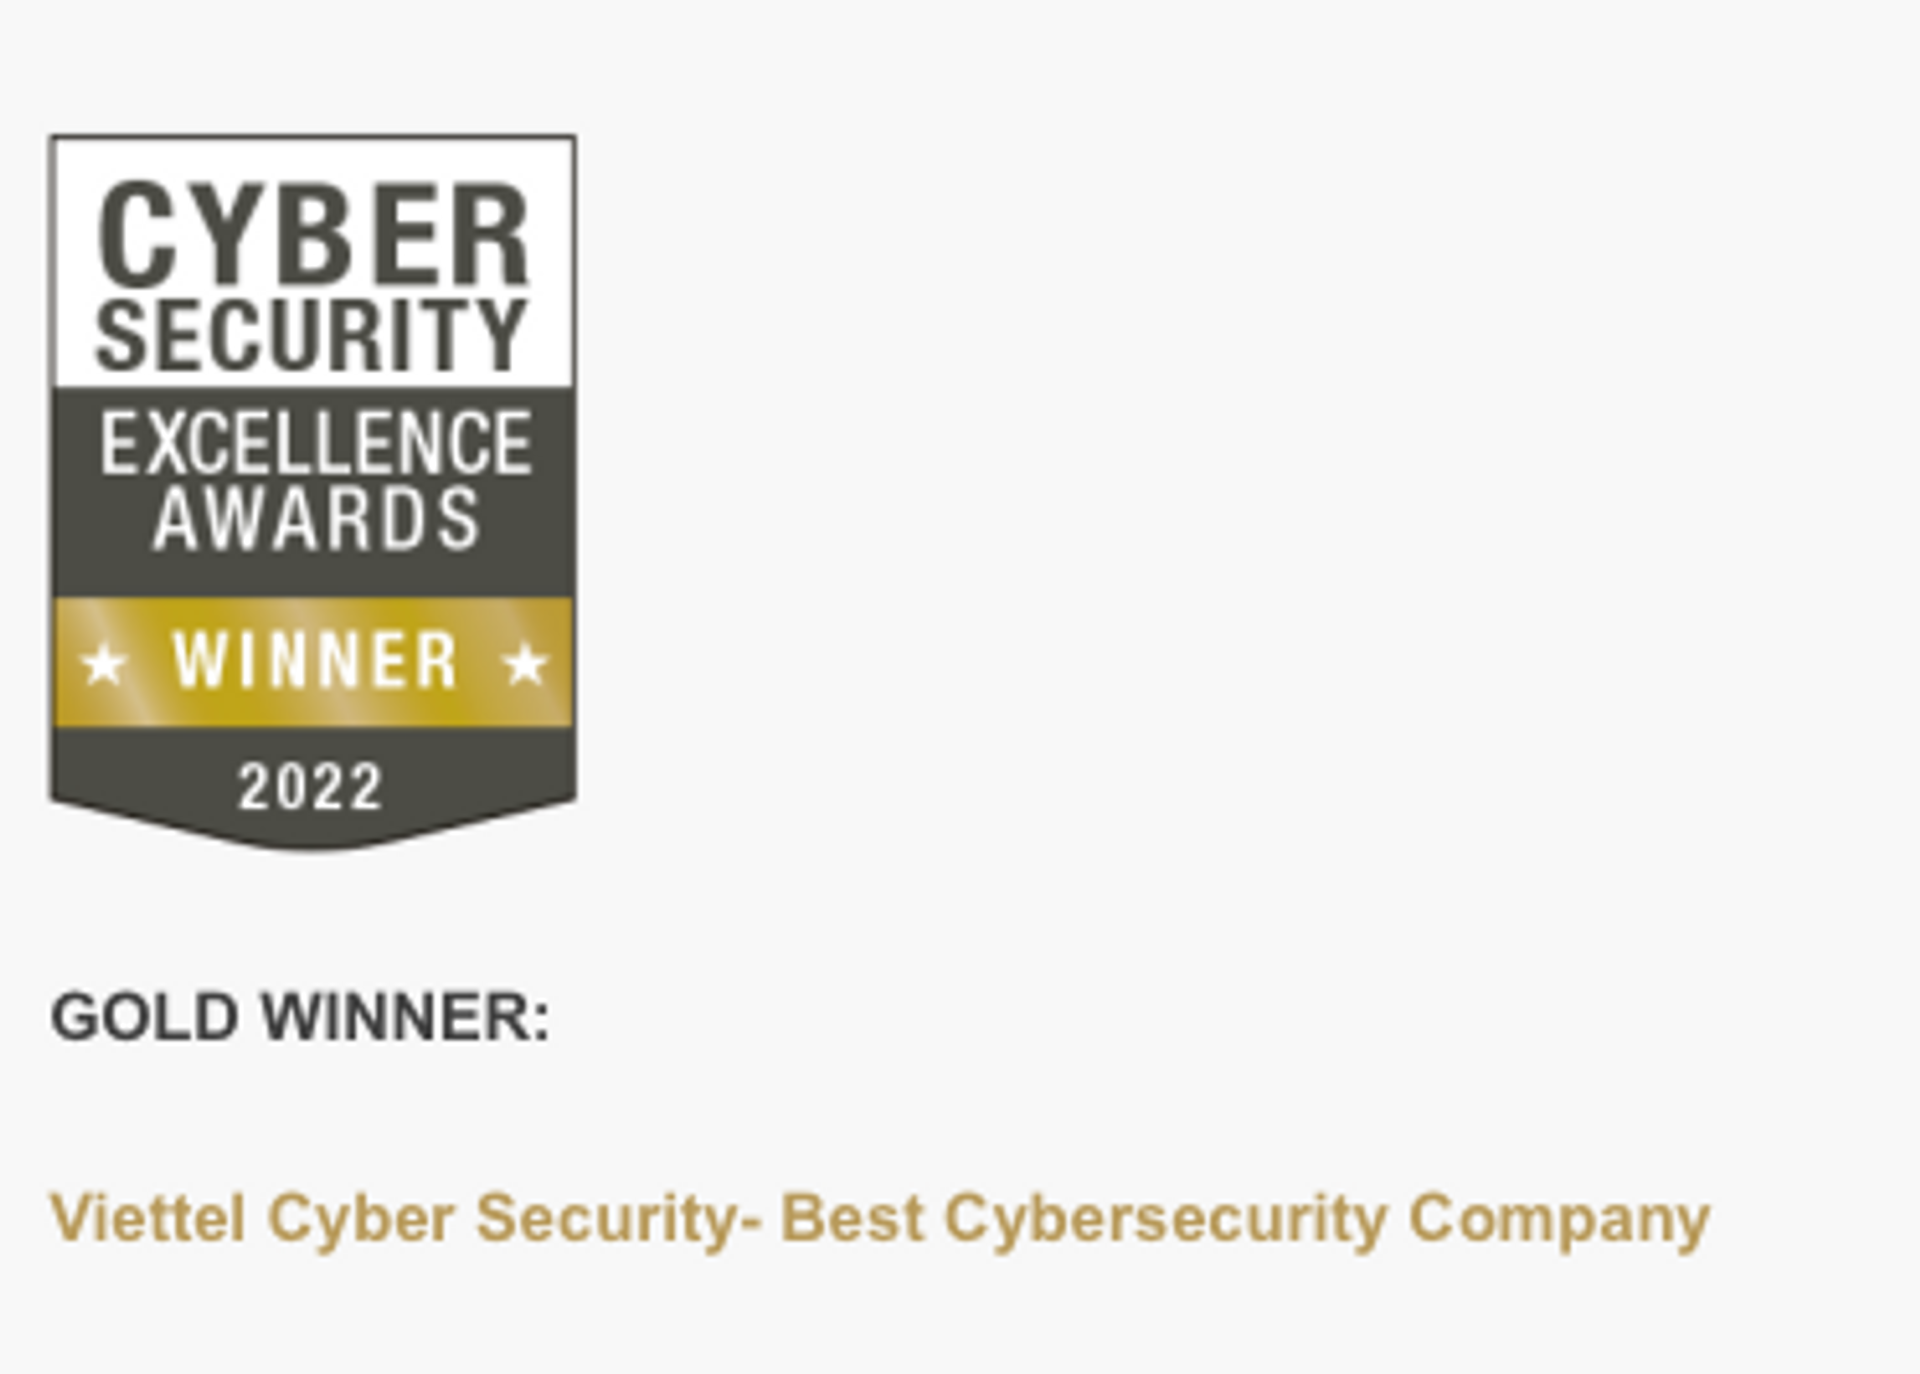 Giải thưởng này mới đây vừa công bố Công ty An ninh mạng Viettel (Viettel Cyber Security - VCS), thuộc Tập đoàn Công nghiệp - Viễn thông Quân đội (Viettel) xuất sắc giành giải vàng tại 13/13 đề cử tham dự. - Sputnik Việt Nam, 1920, 23.02.2022